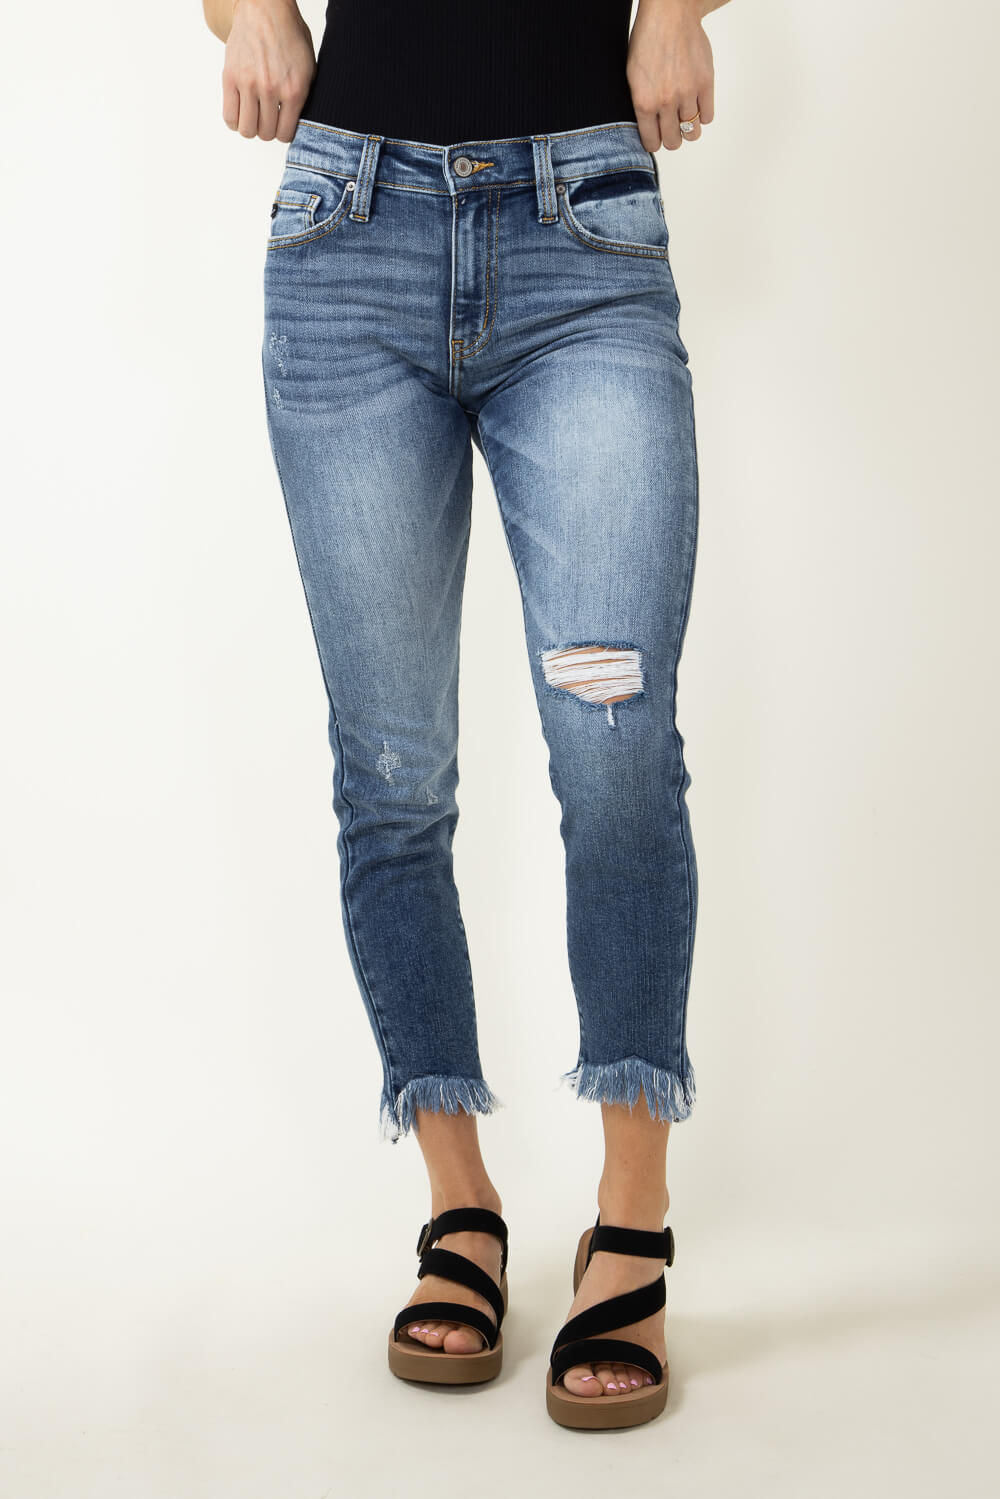 KanCan Mid Rise Medium Frey Hem Skinny Jeans for Women